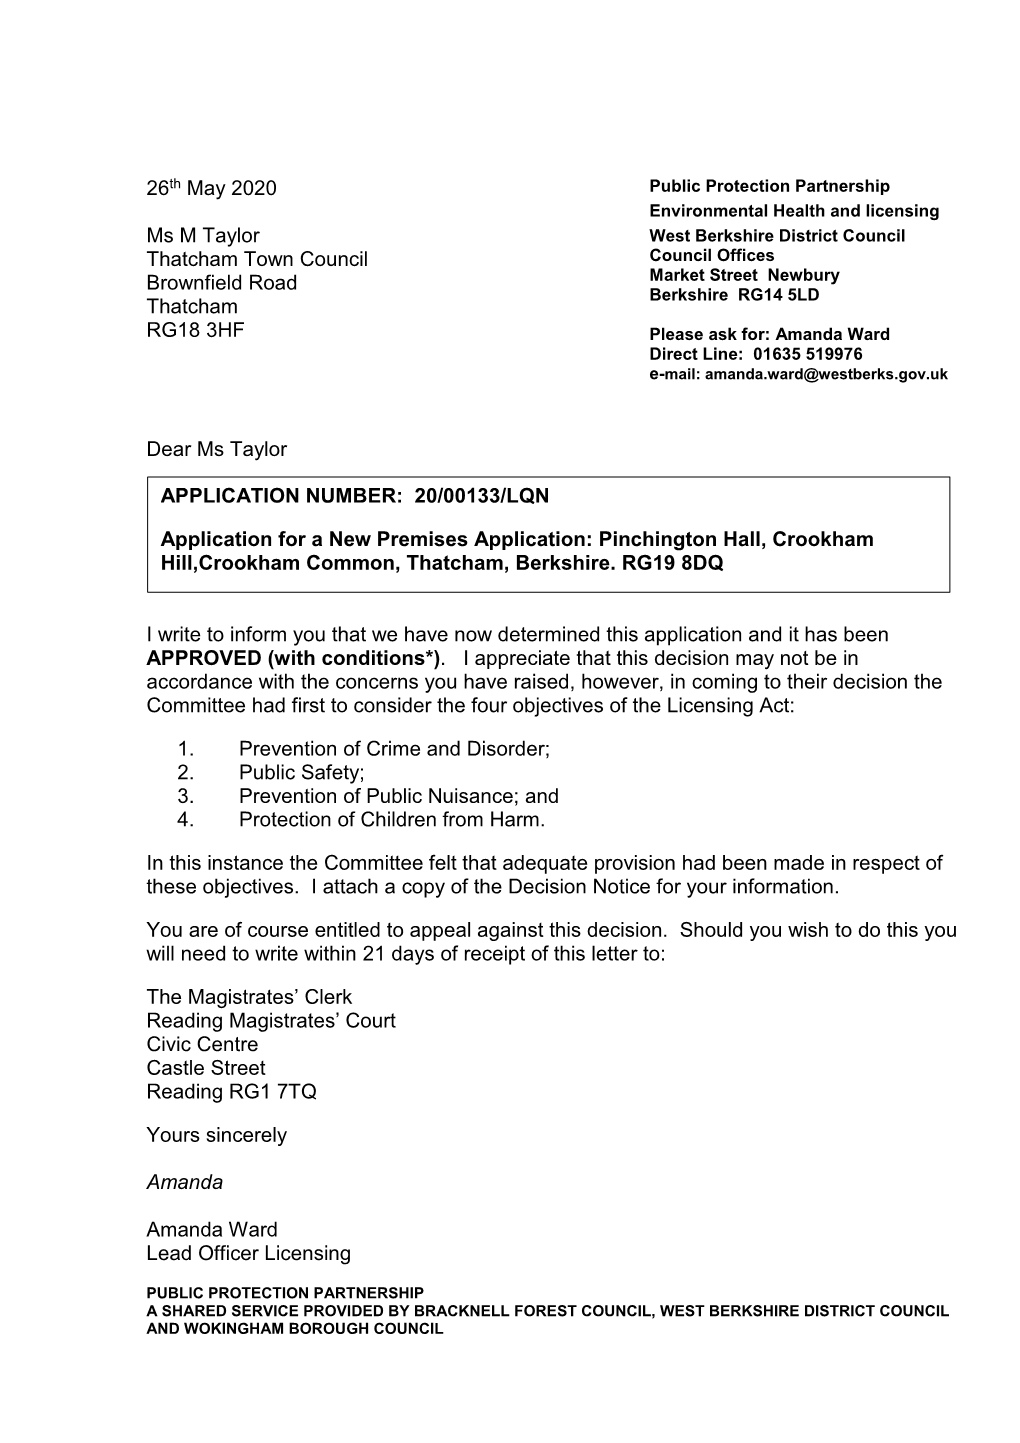 Decision Letter Ms Taylor Thatcham Town Council